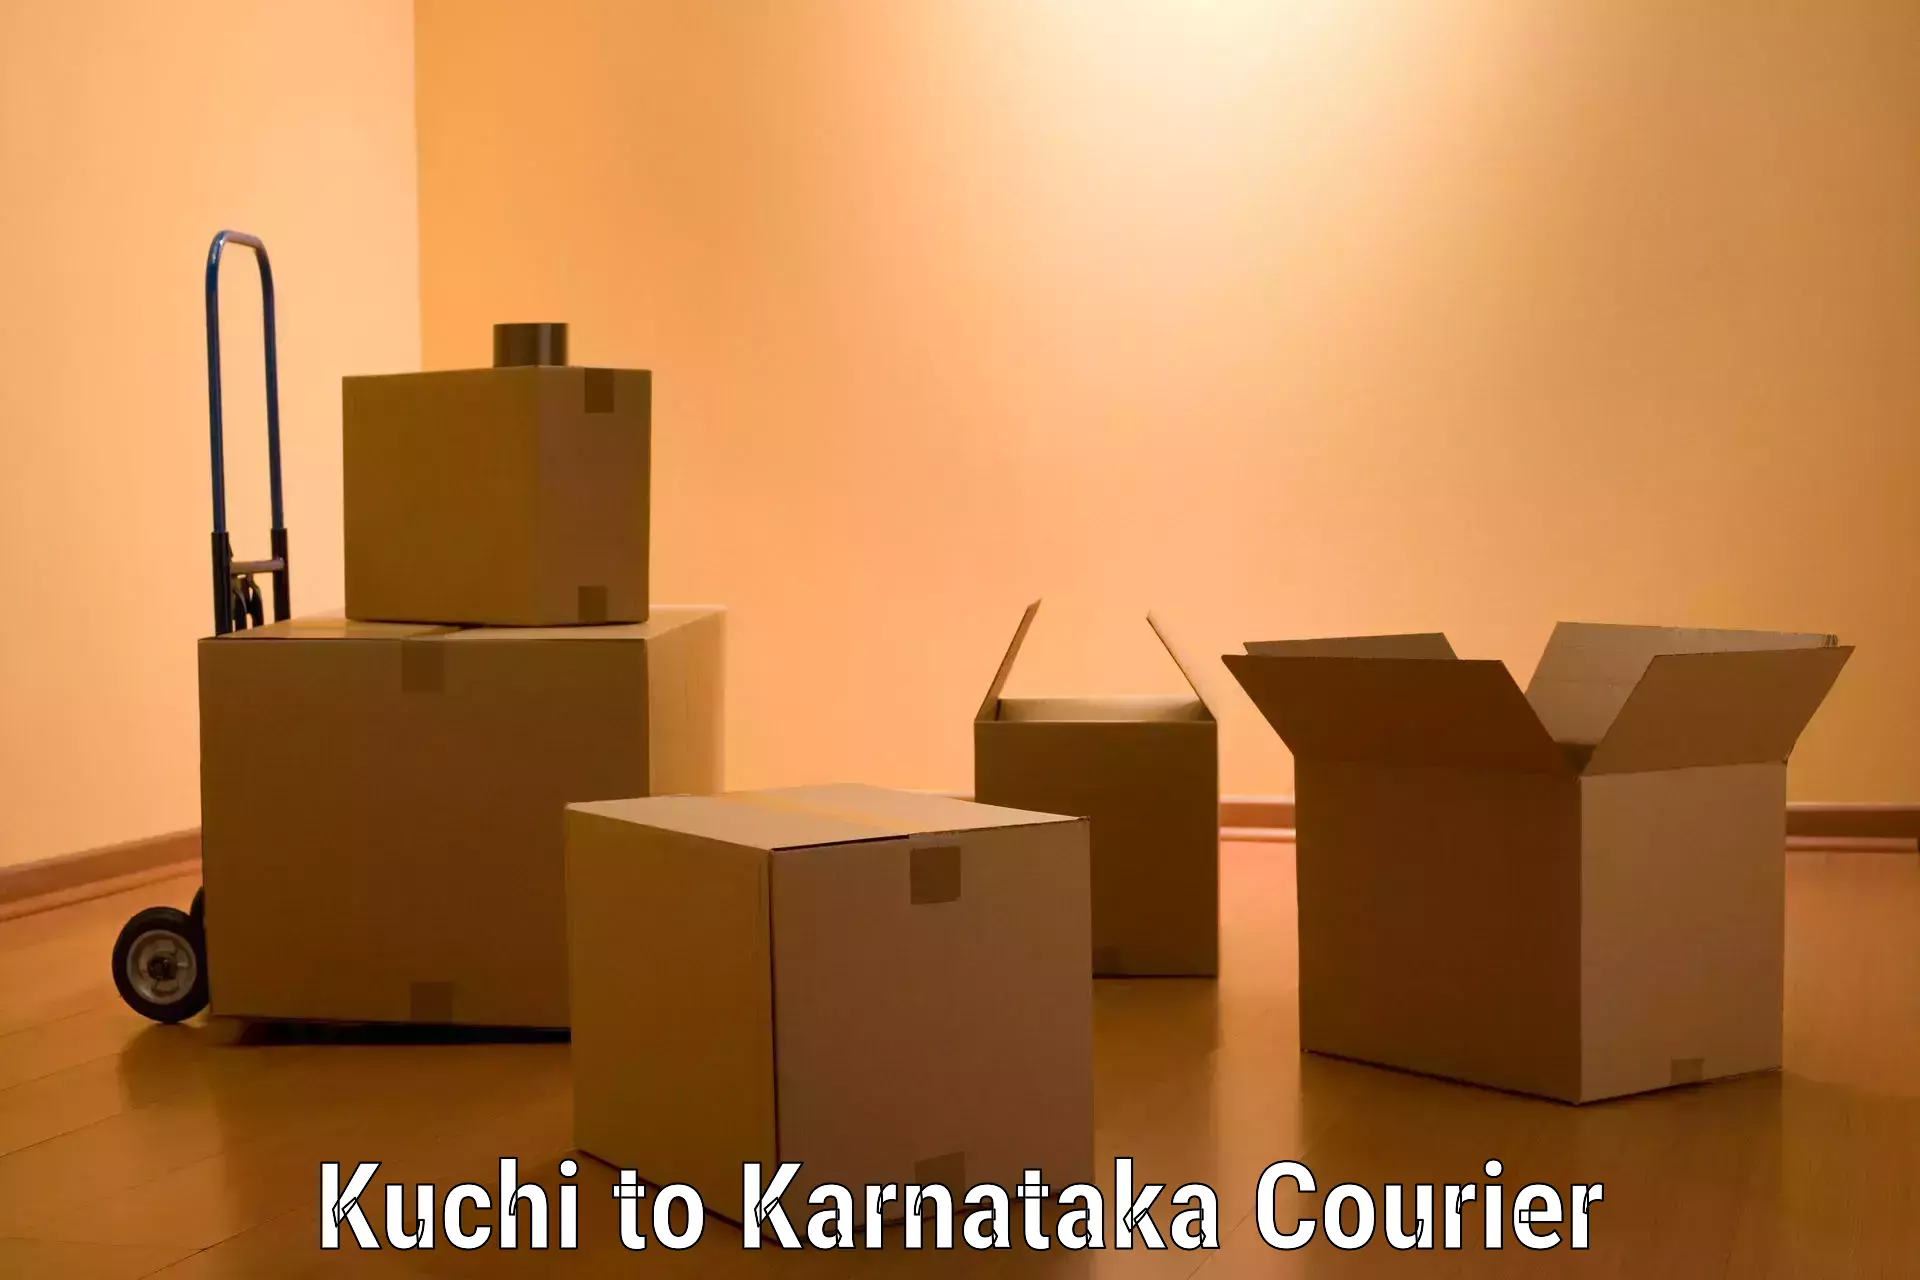 Furniture transport services Kuchi to Karnataka